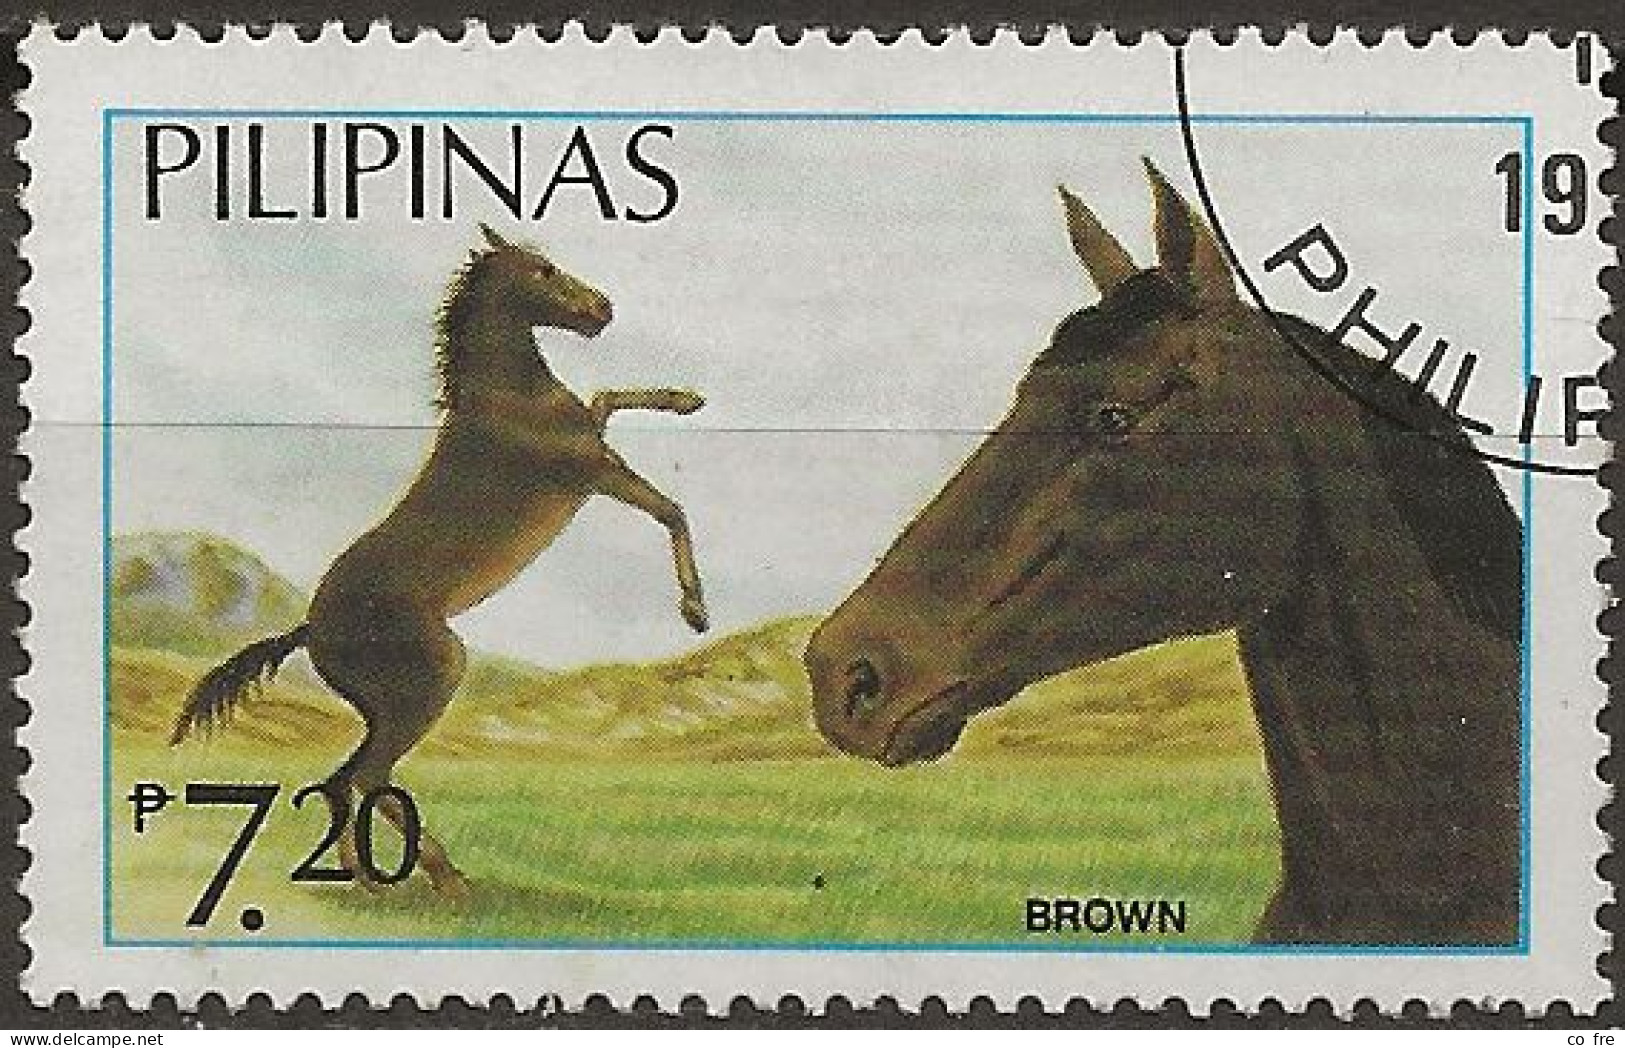 Philippines N°1446 (ref.2) - Filippine